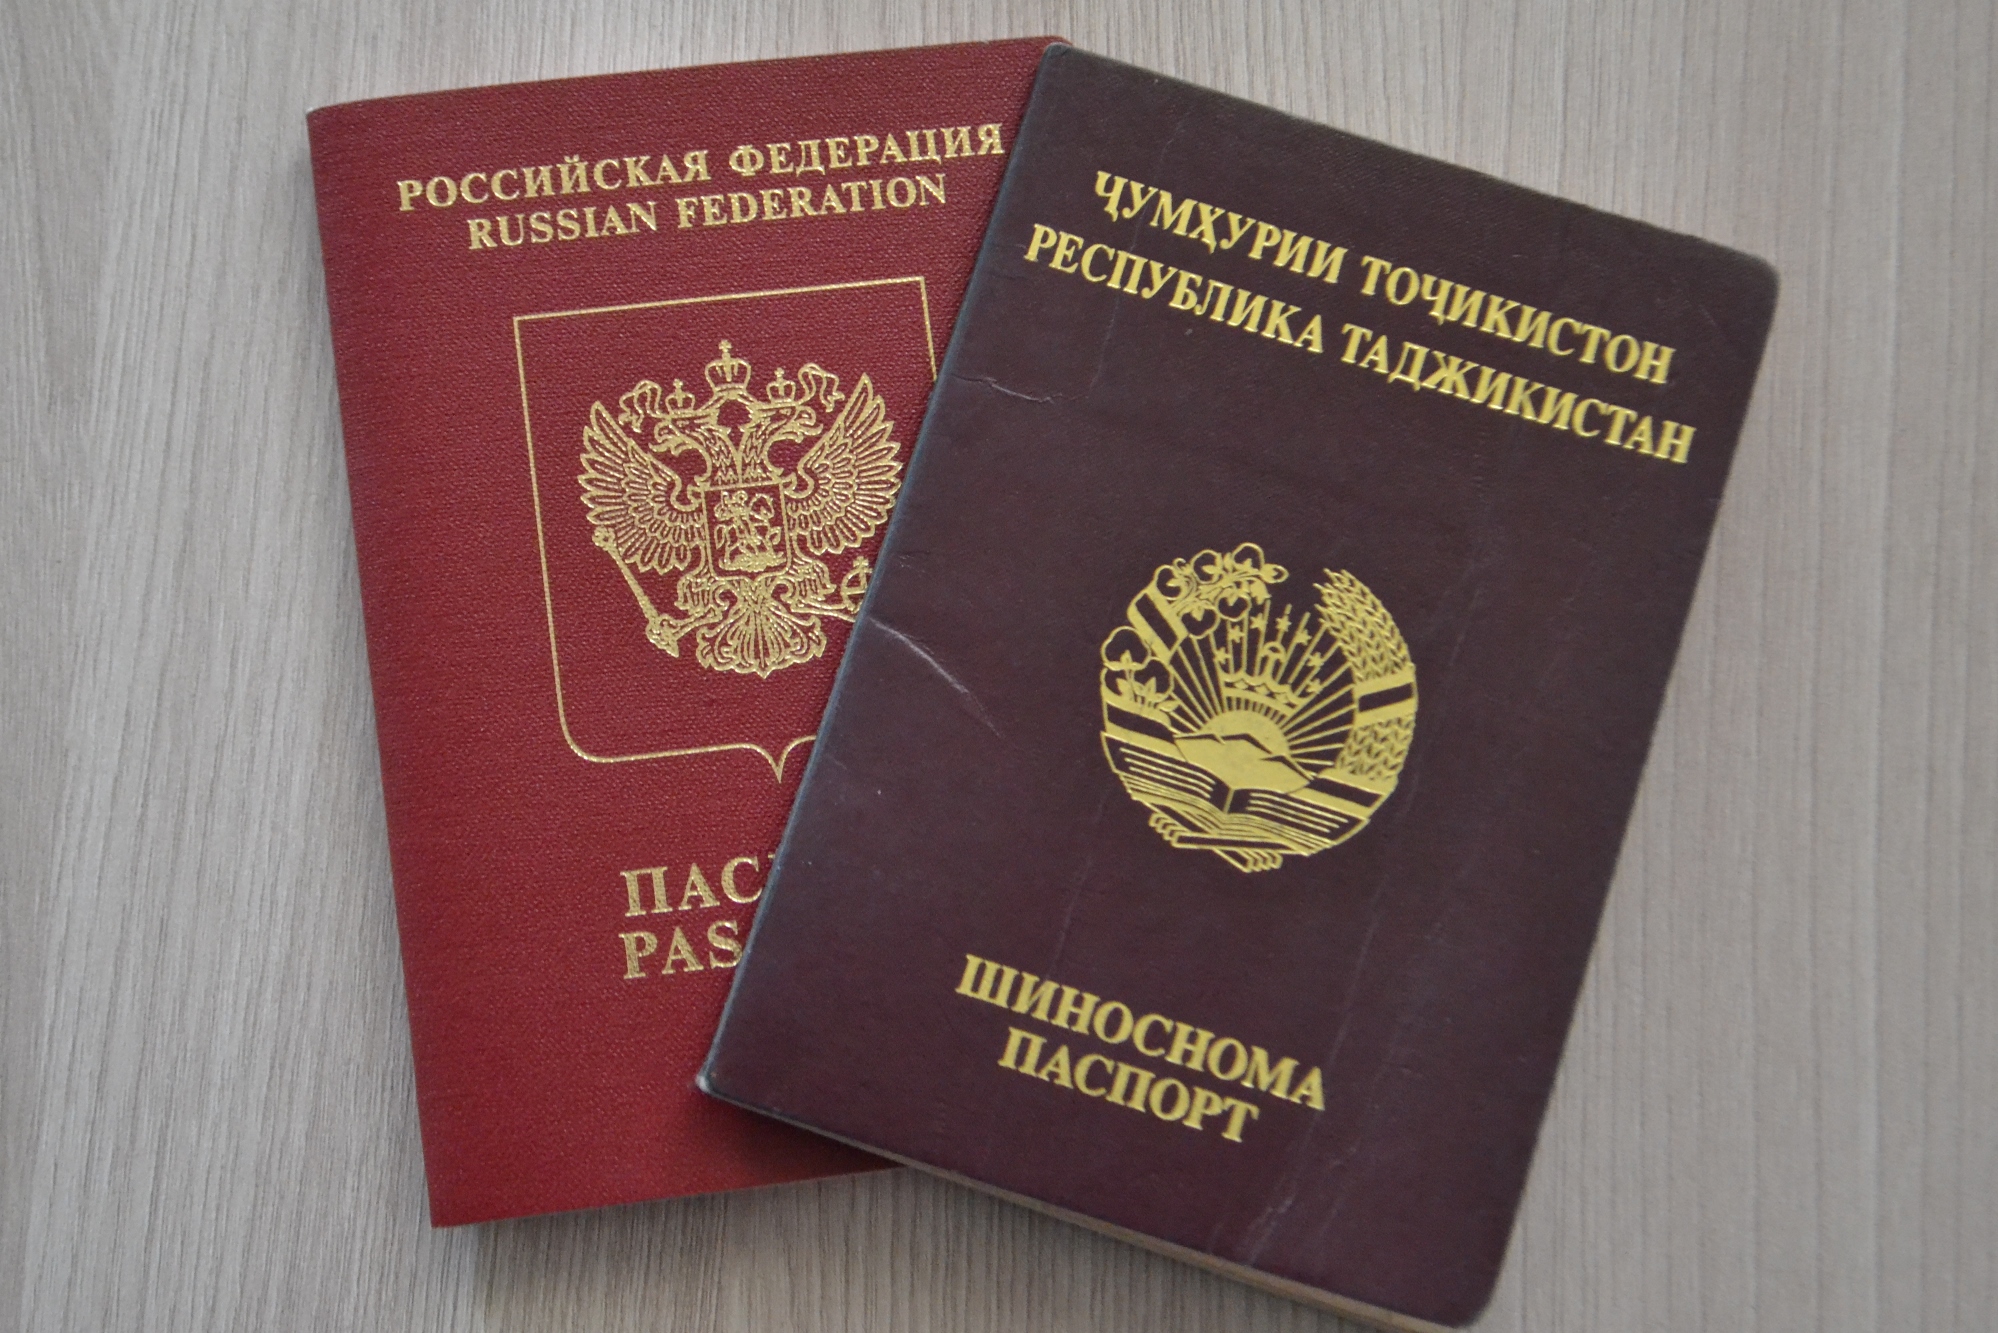 Нацбанк Таджикистана опровергает информацию об увольнении сотрудников с российским гражданством